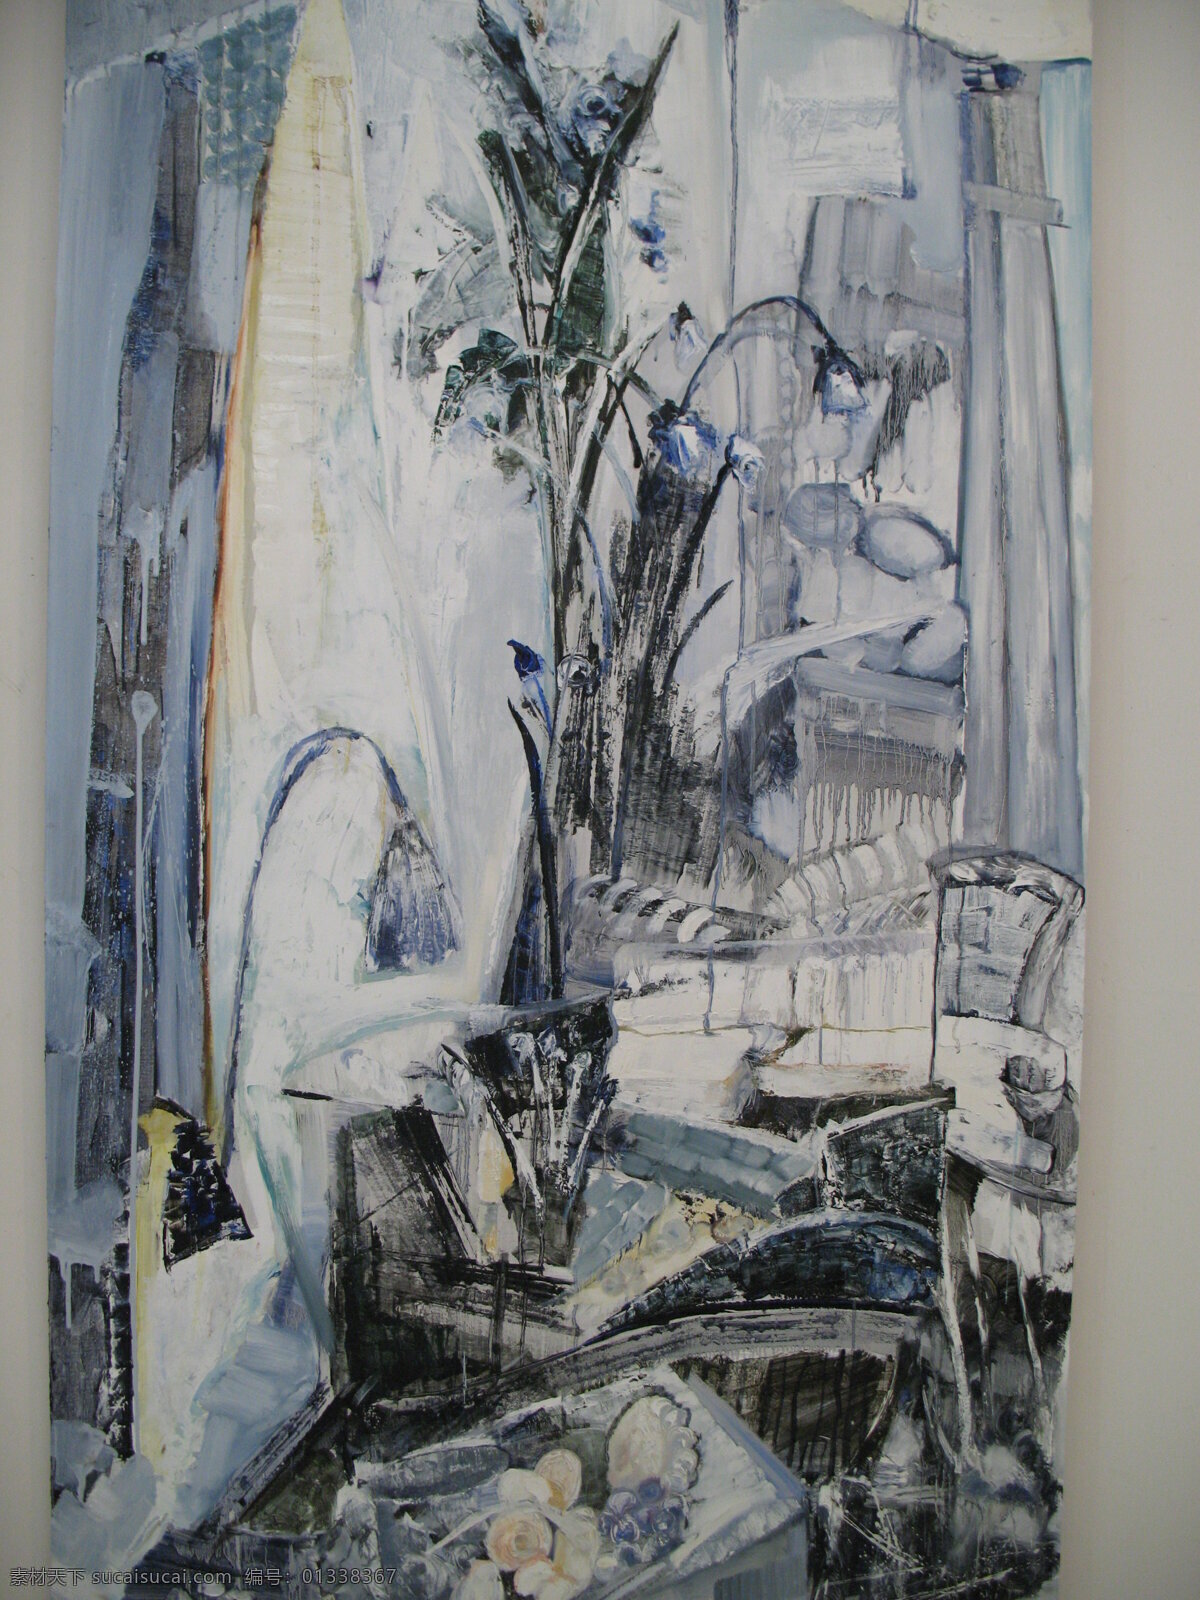 抽象油画 油画 抽象 人物 室内 小床 窗台 花朵 水果 椅子 美术绘画 文化艺术